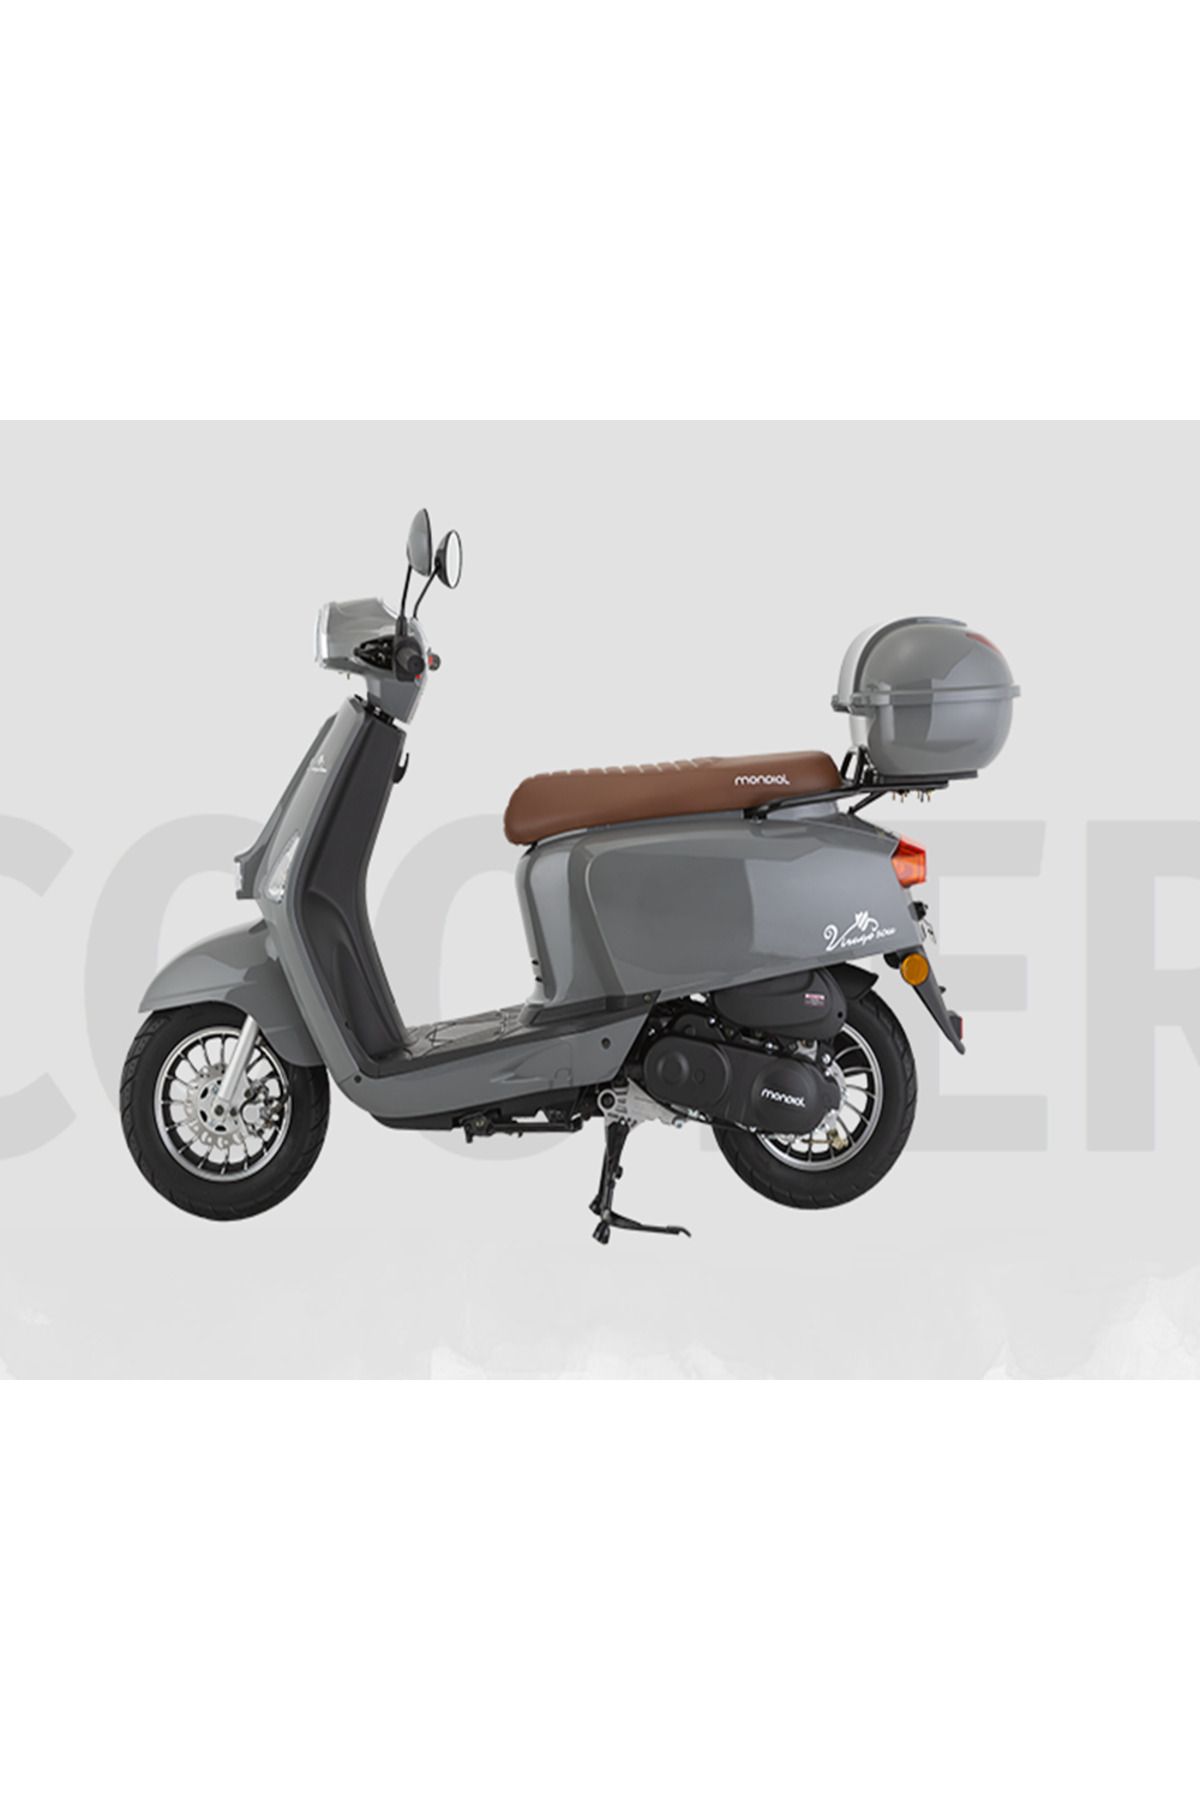 Mondial 50 Virago İ Benzinli Scooter Nardo Gri